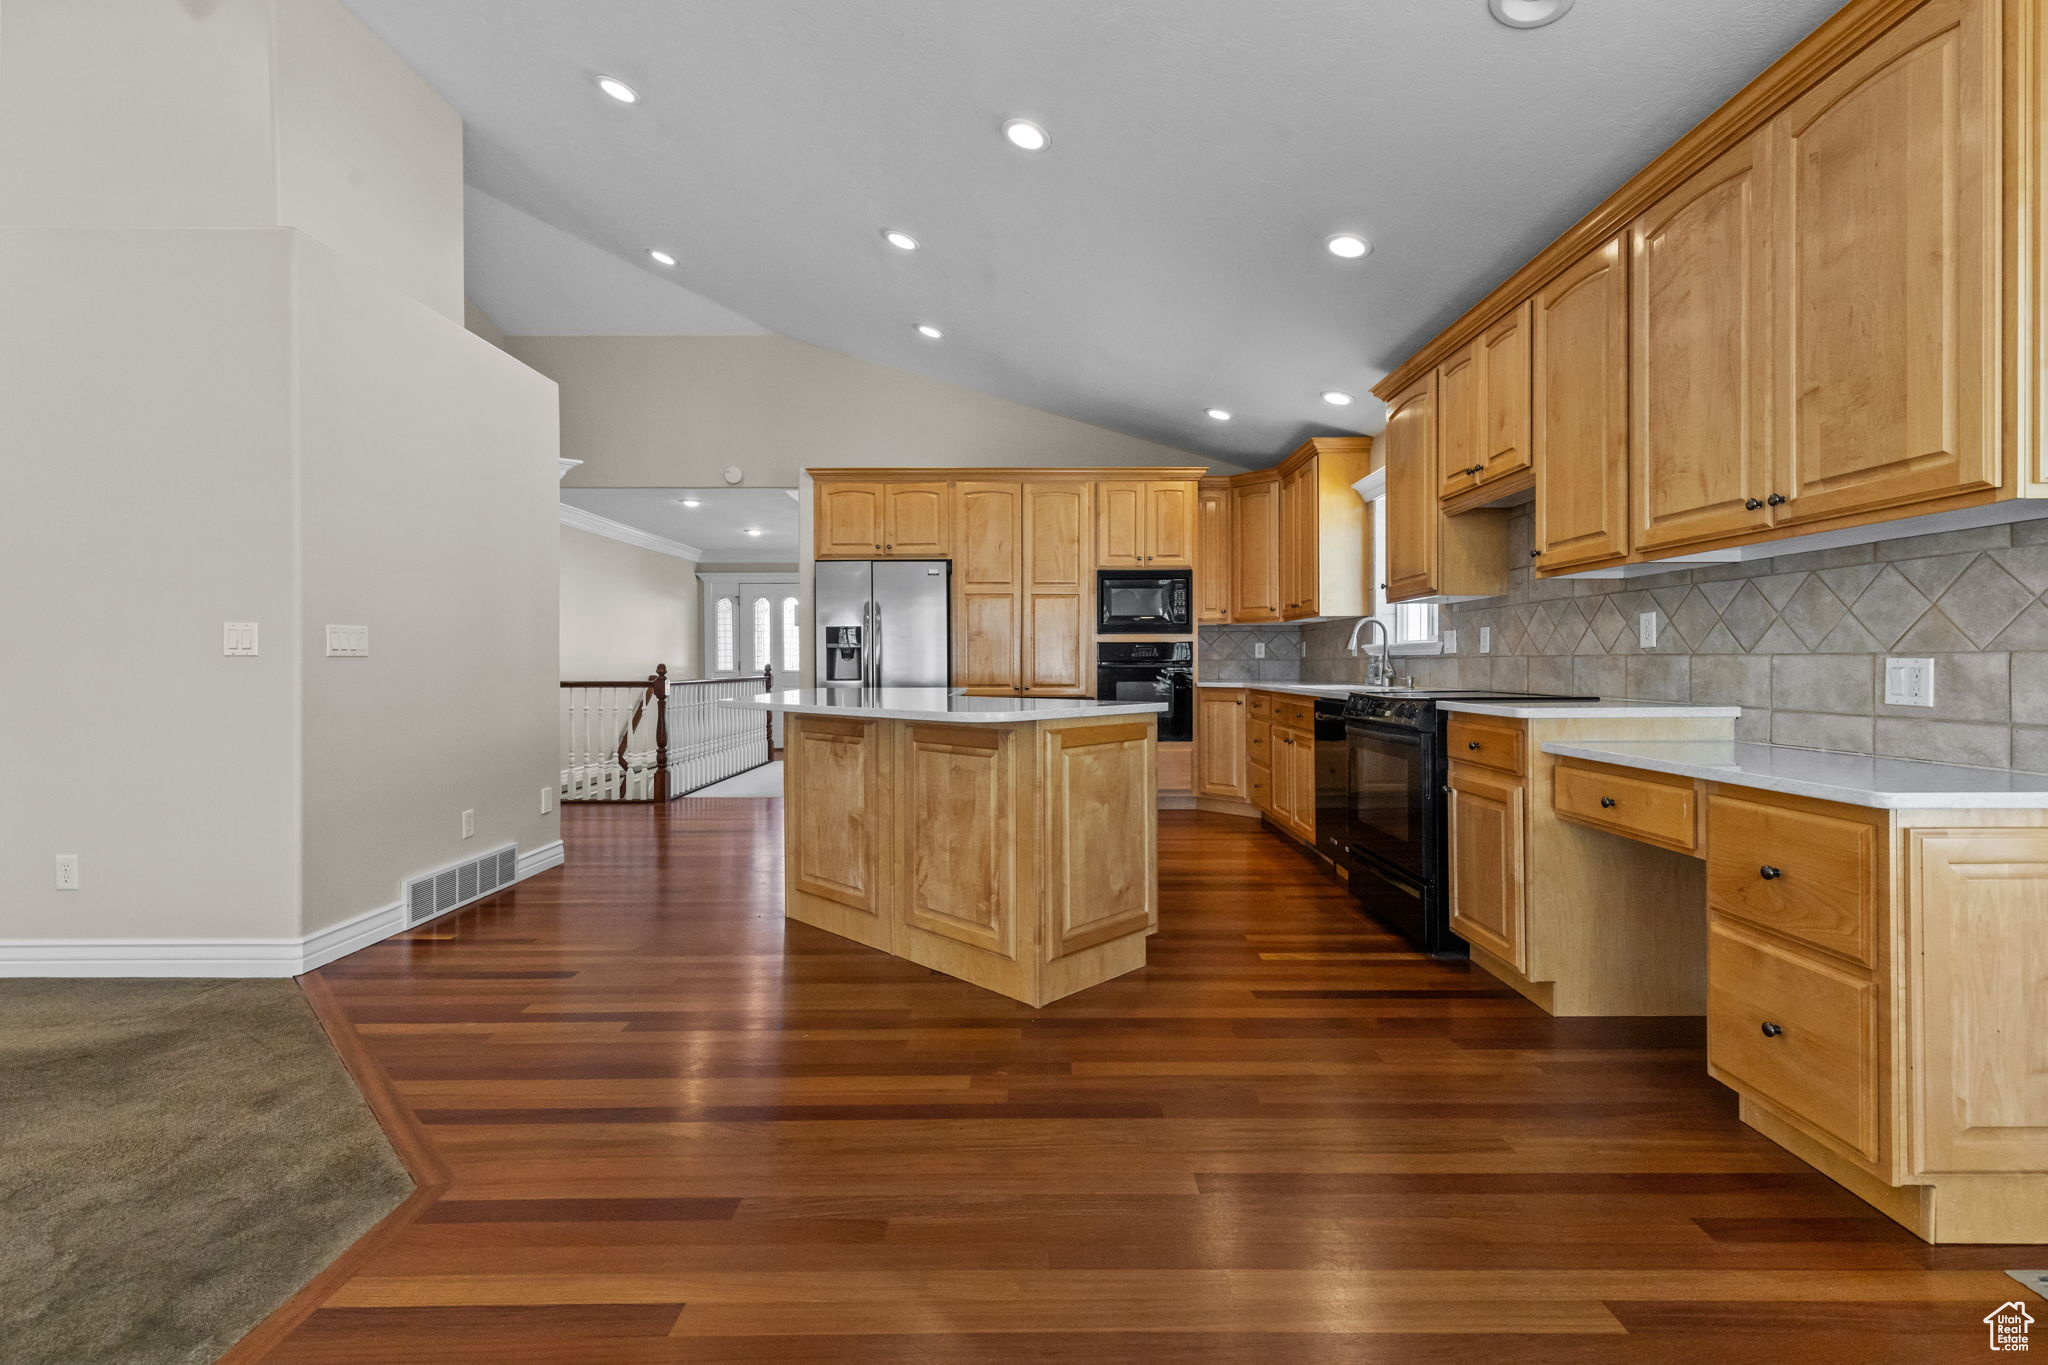 Kitchen featuring a kitchen island, backsplash, black appliances, sink, and dark hardwood / wood-style flooring